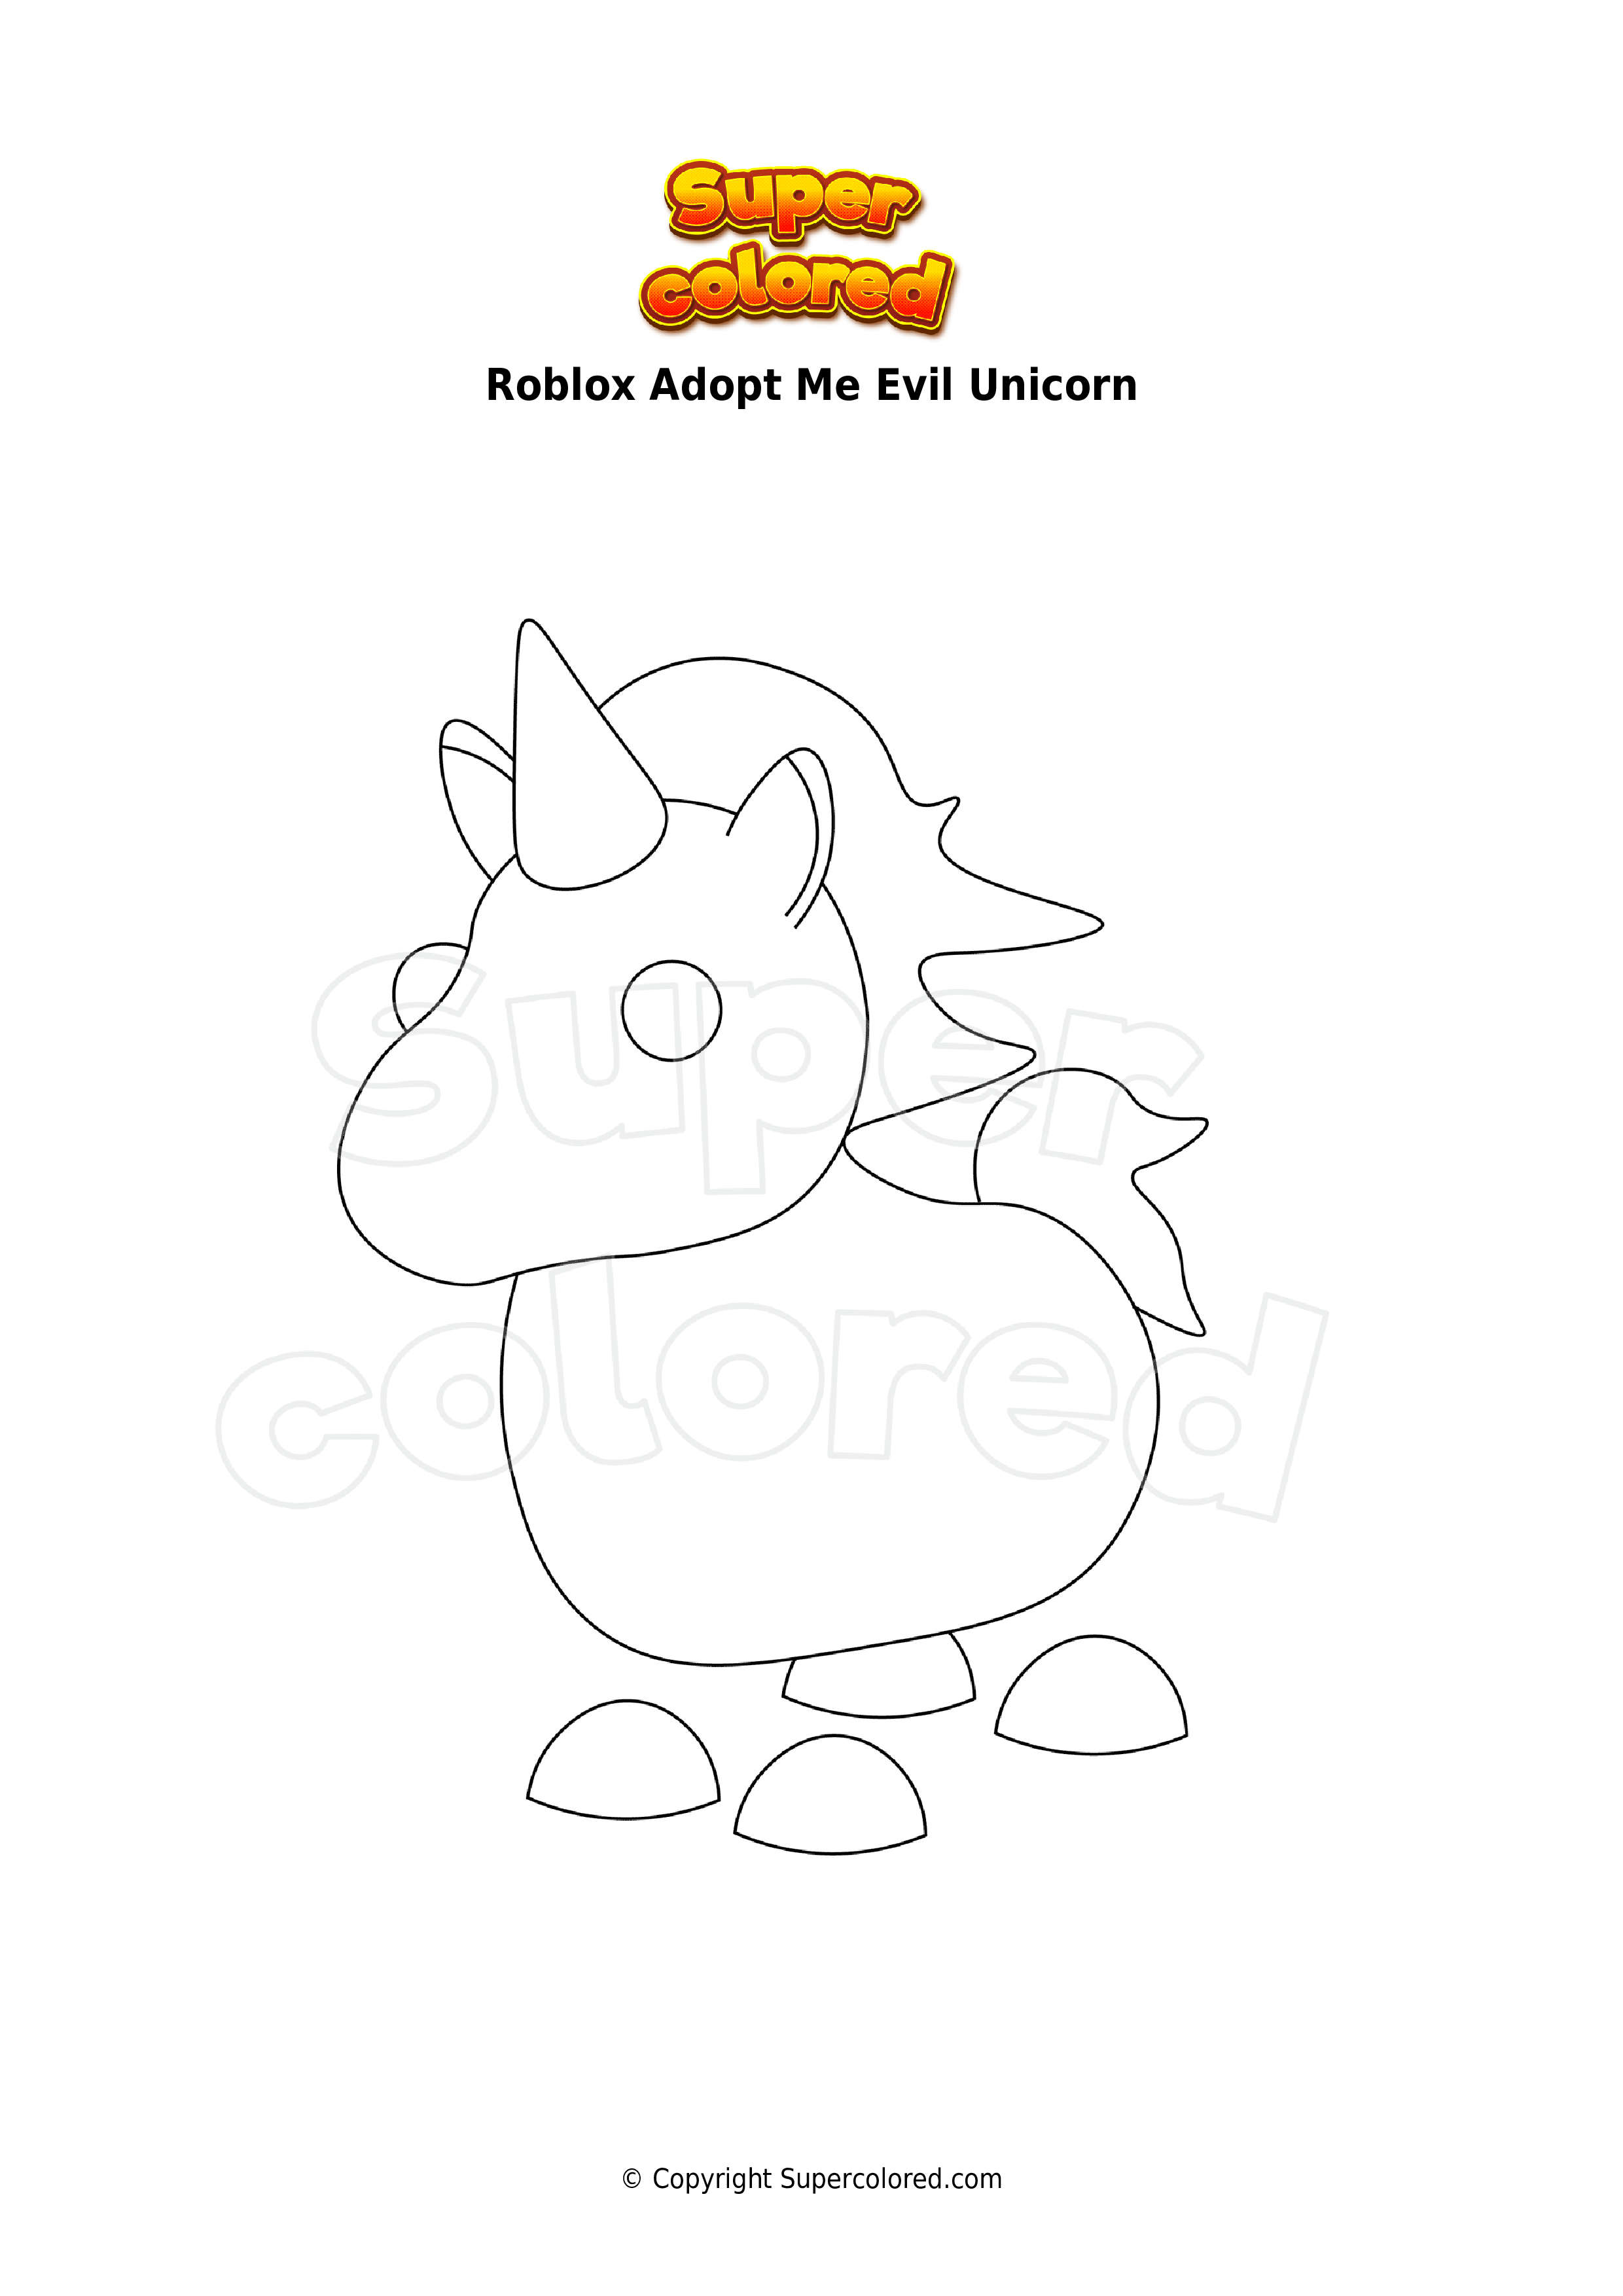 Coloring page Roblox Adopt Me Evil Unicorn   Supercolored.com